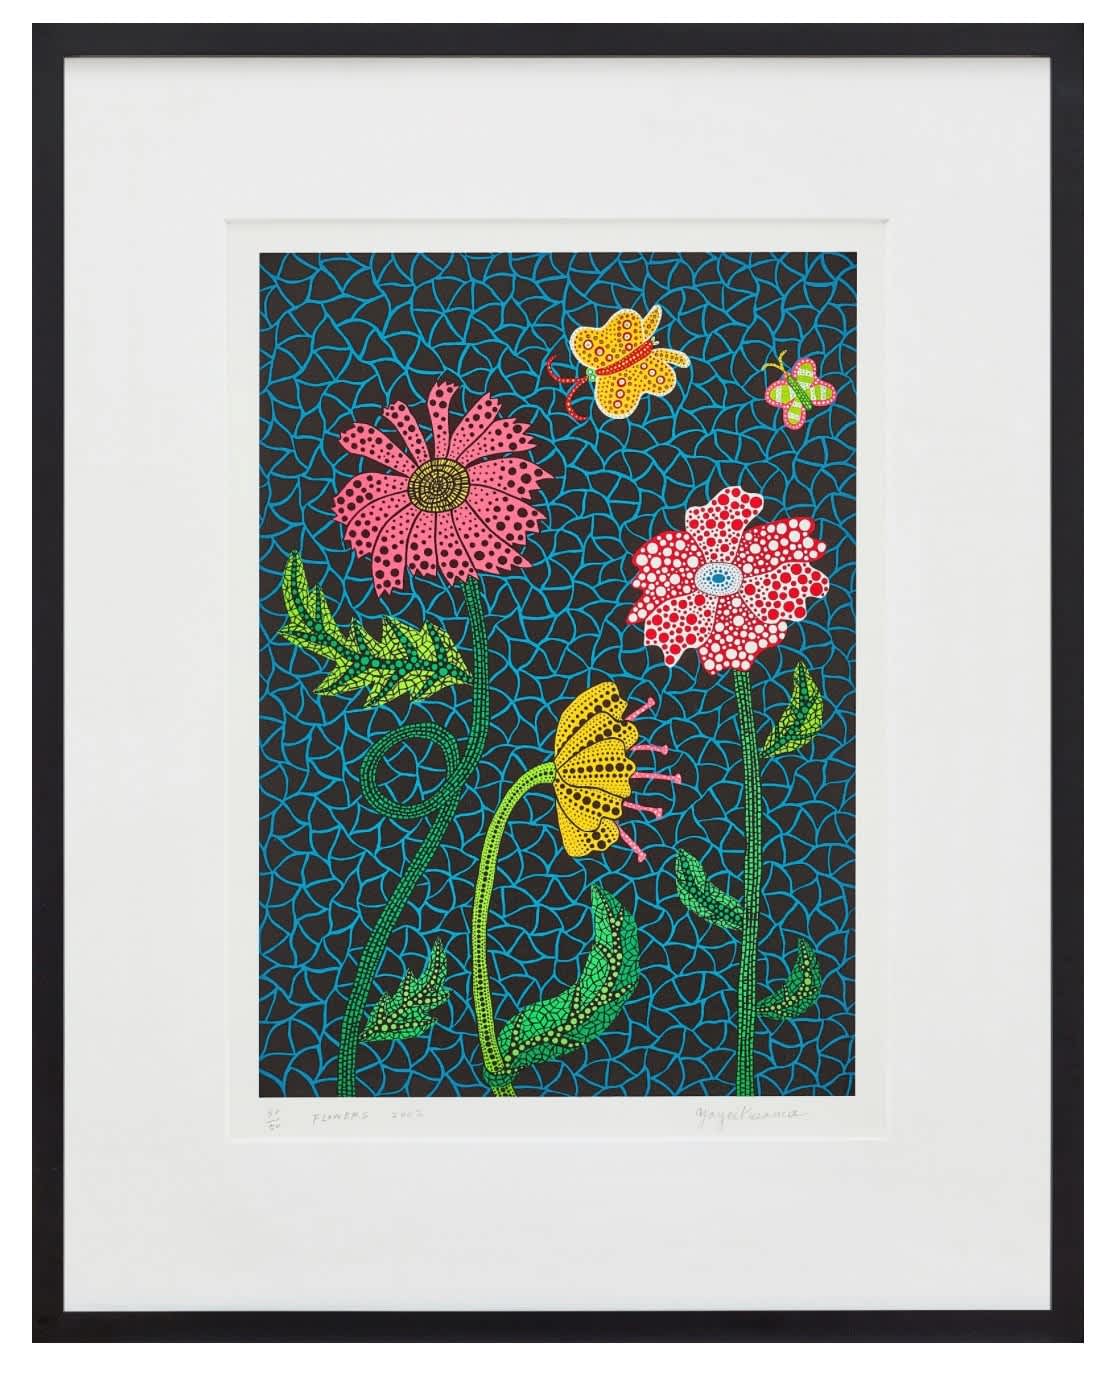 Yayoi Kusama, Flowers, 2002